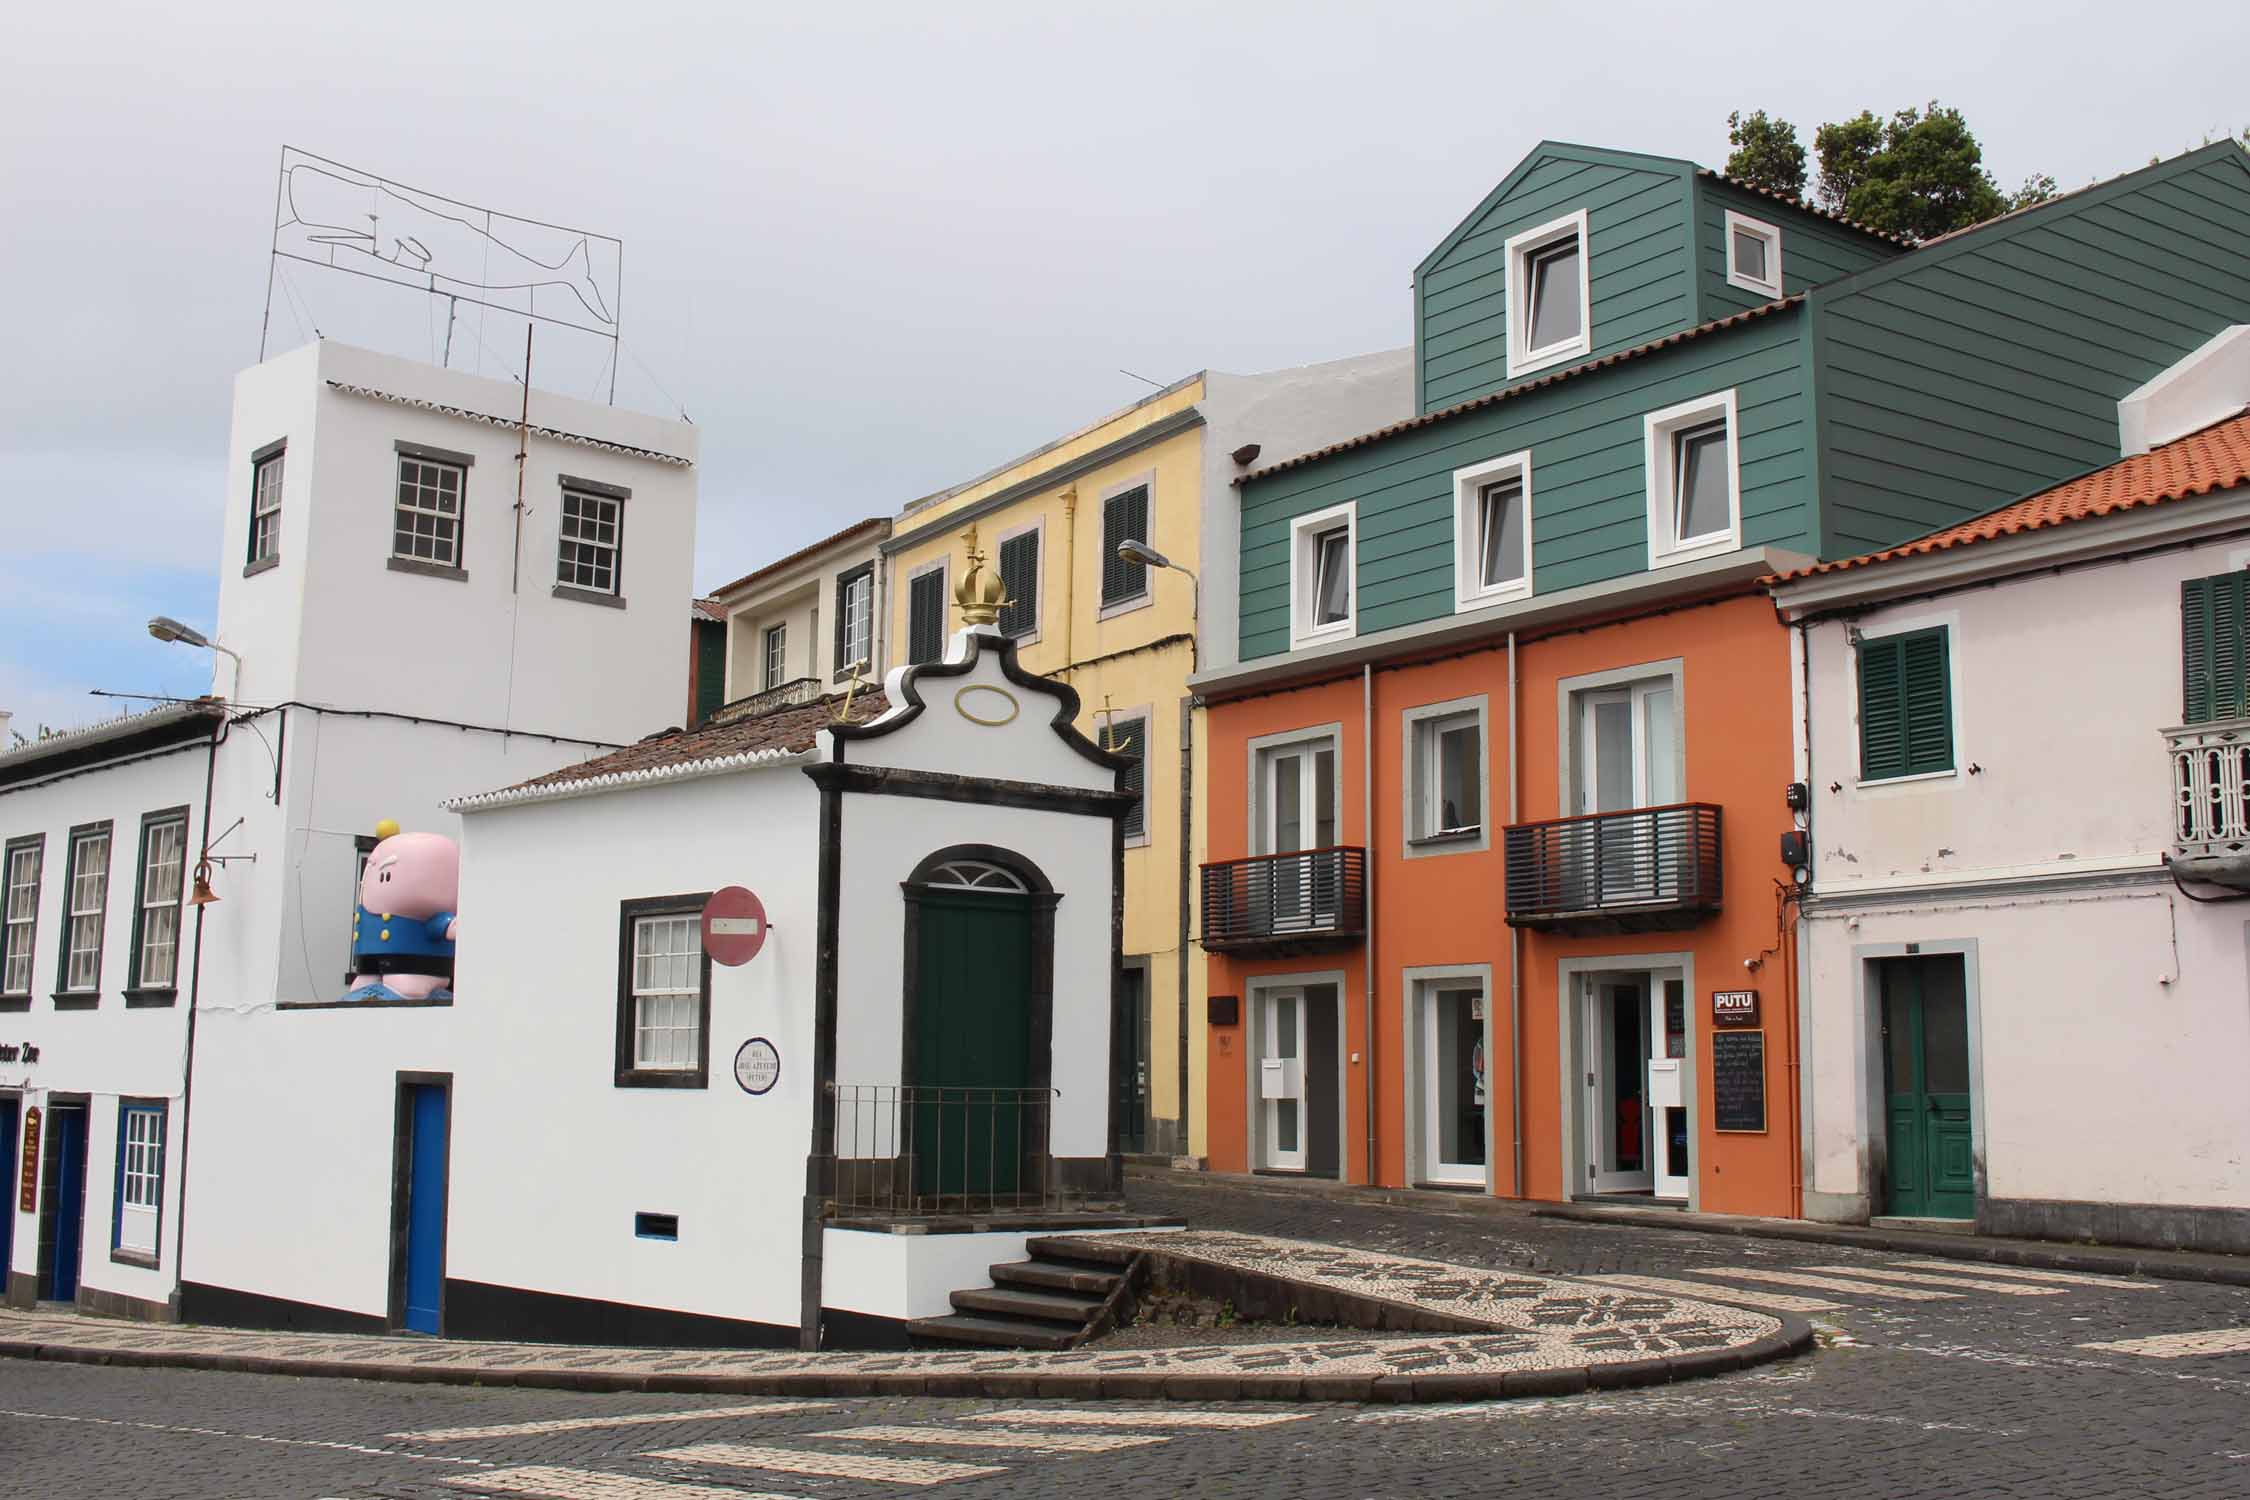 Açores, Île de Faial, Horta, maisons colorées